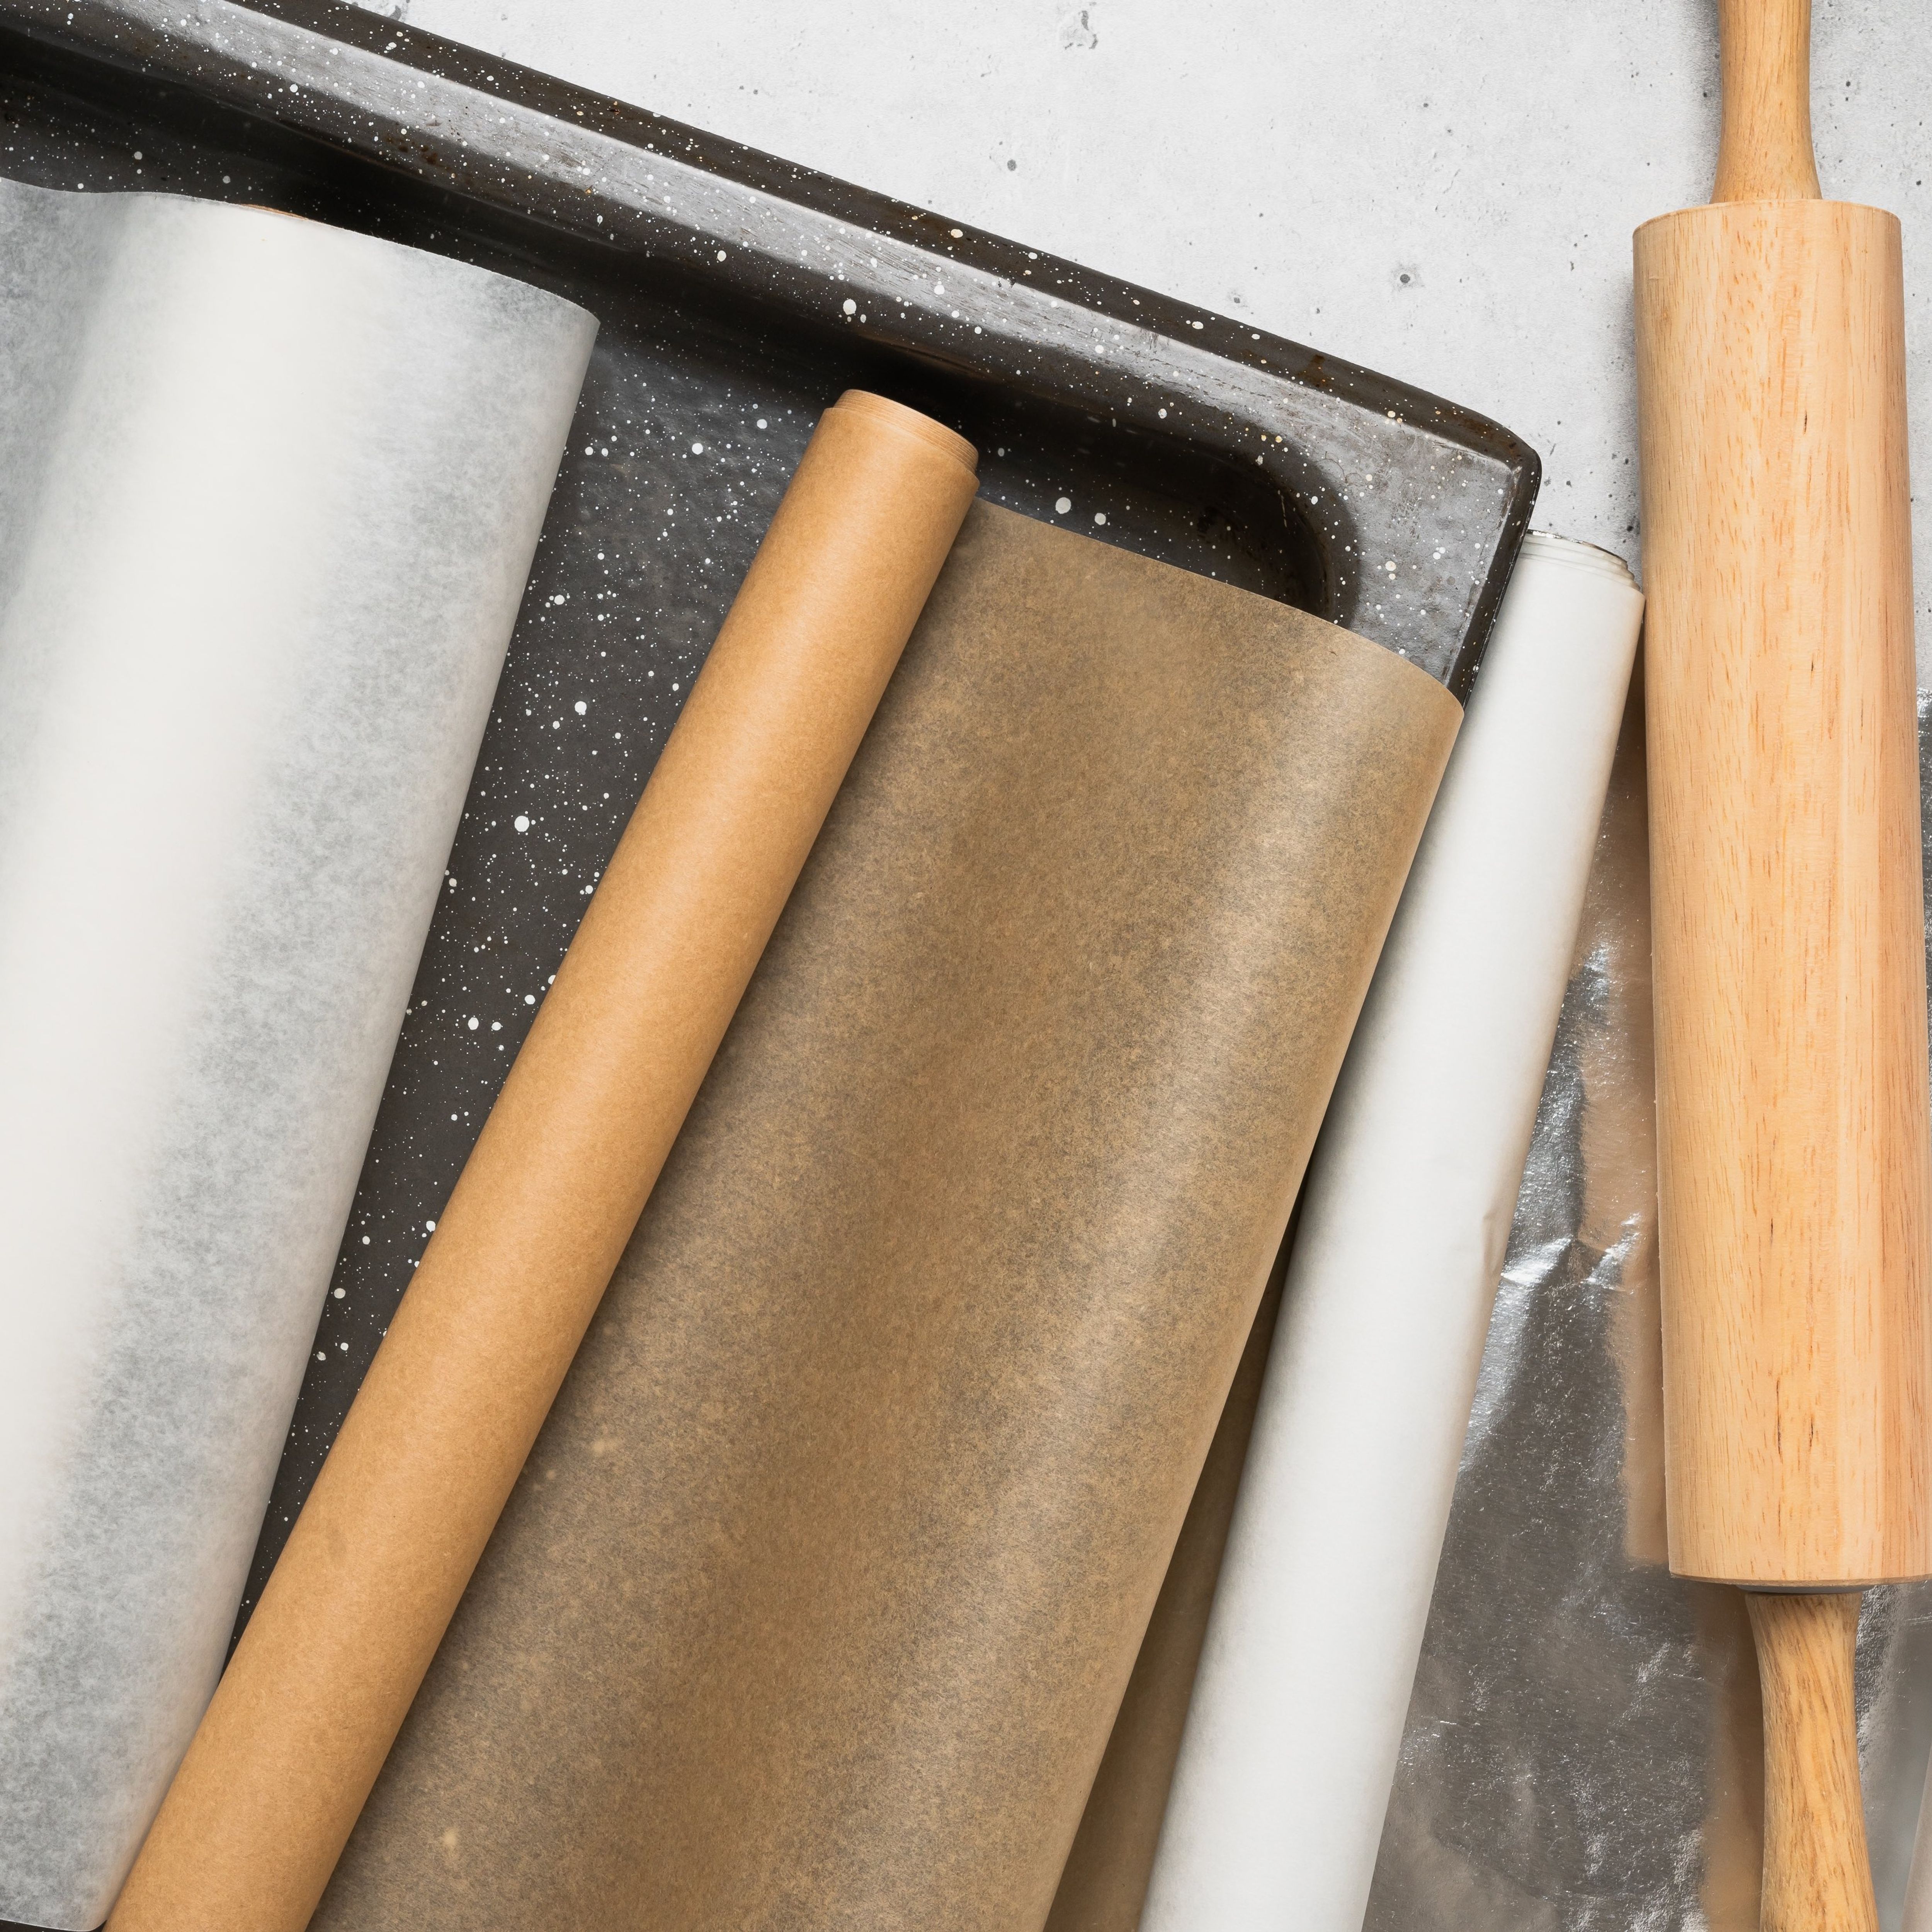 Connaissez-vous la différence entre papier cuisson et papier sulfurisé ?